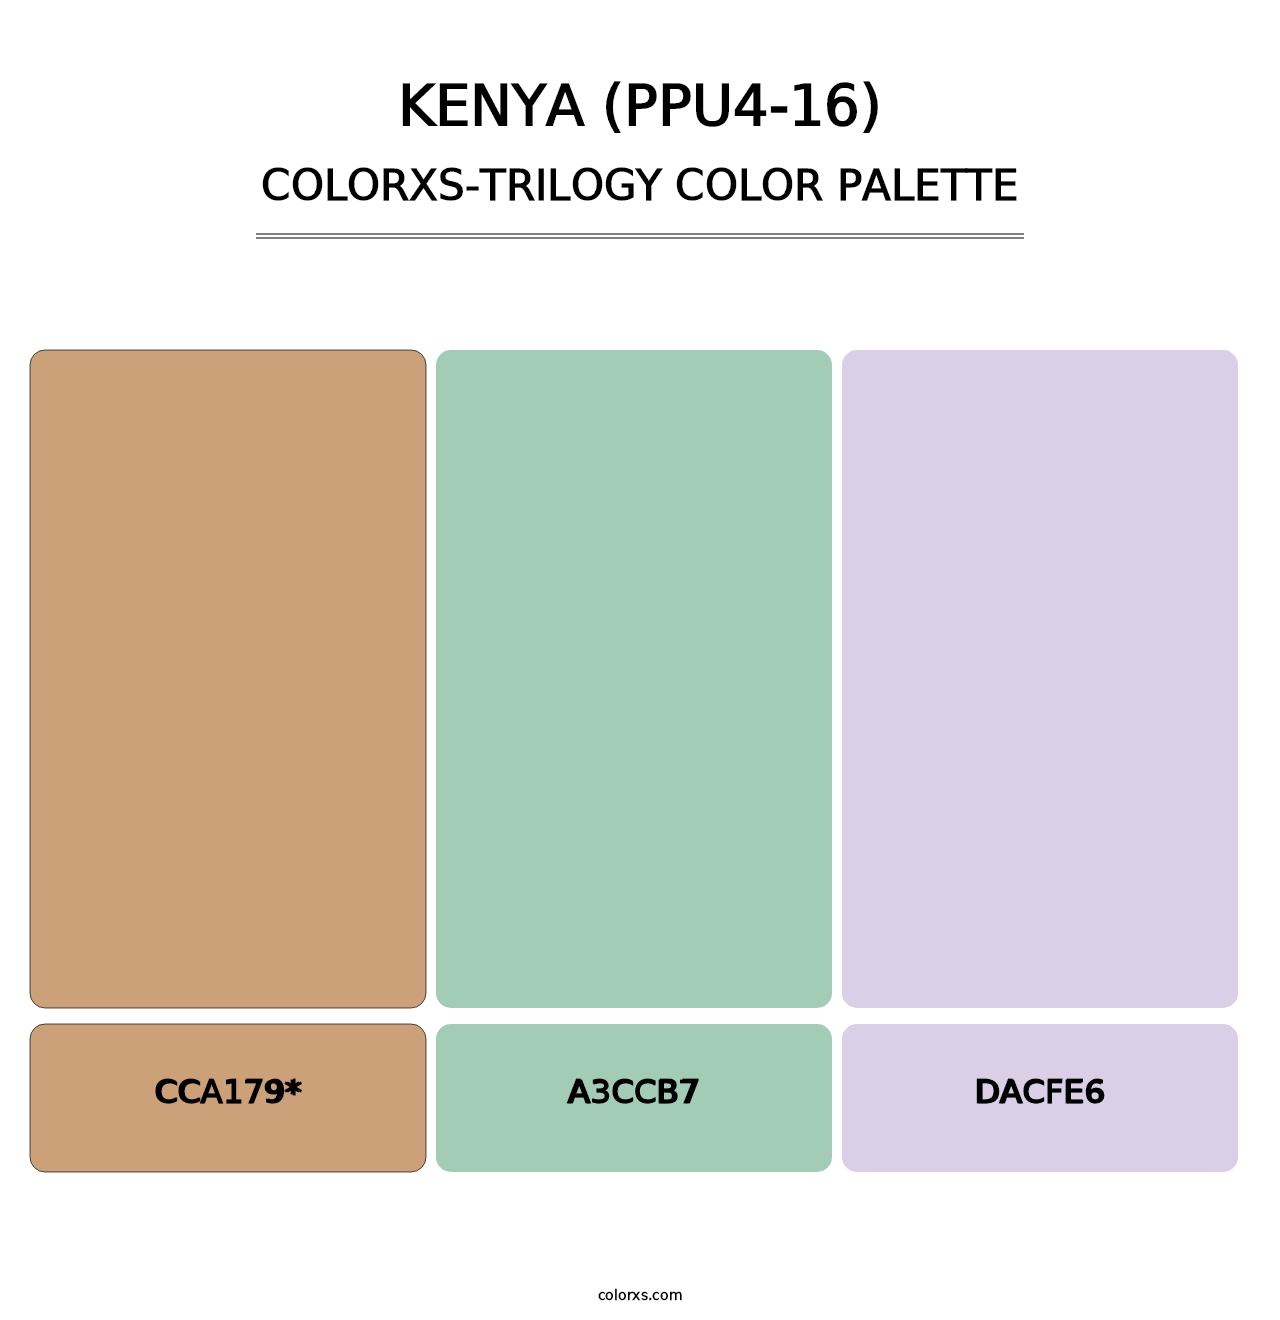 Kenya (PPU4-16) - Colorxs Trilogy Palette